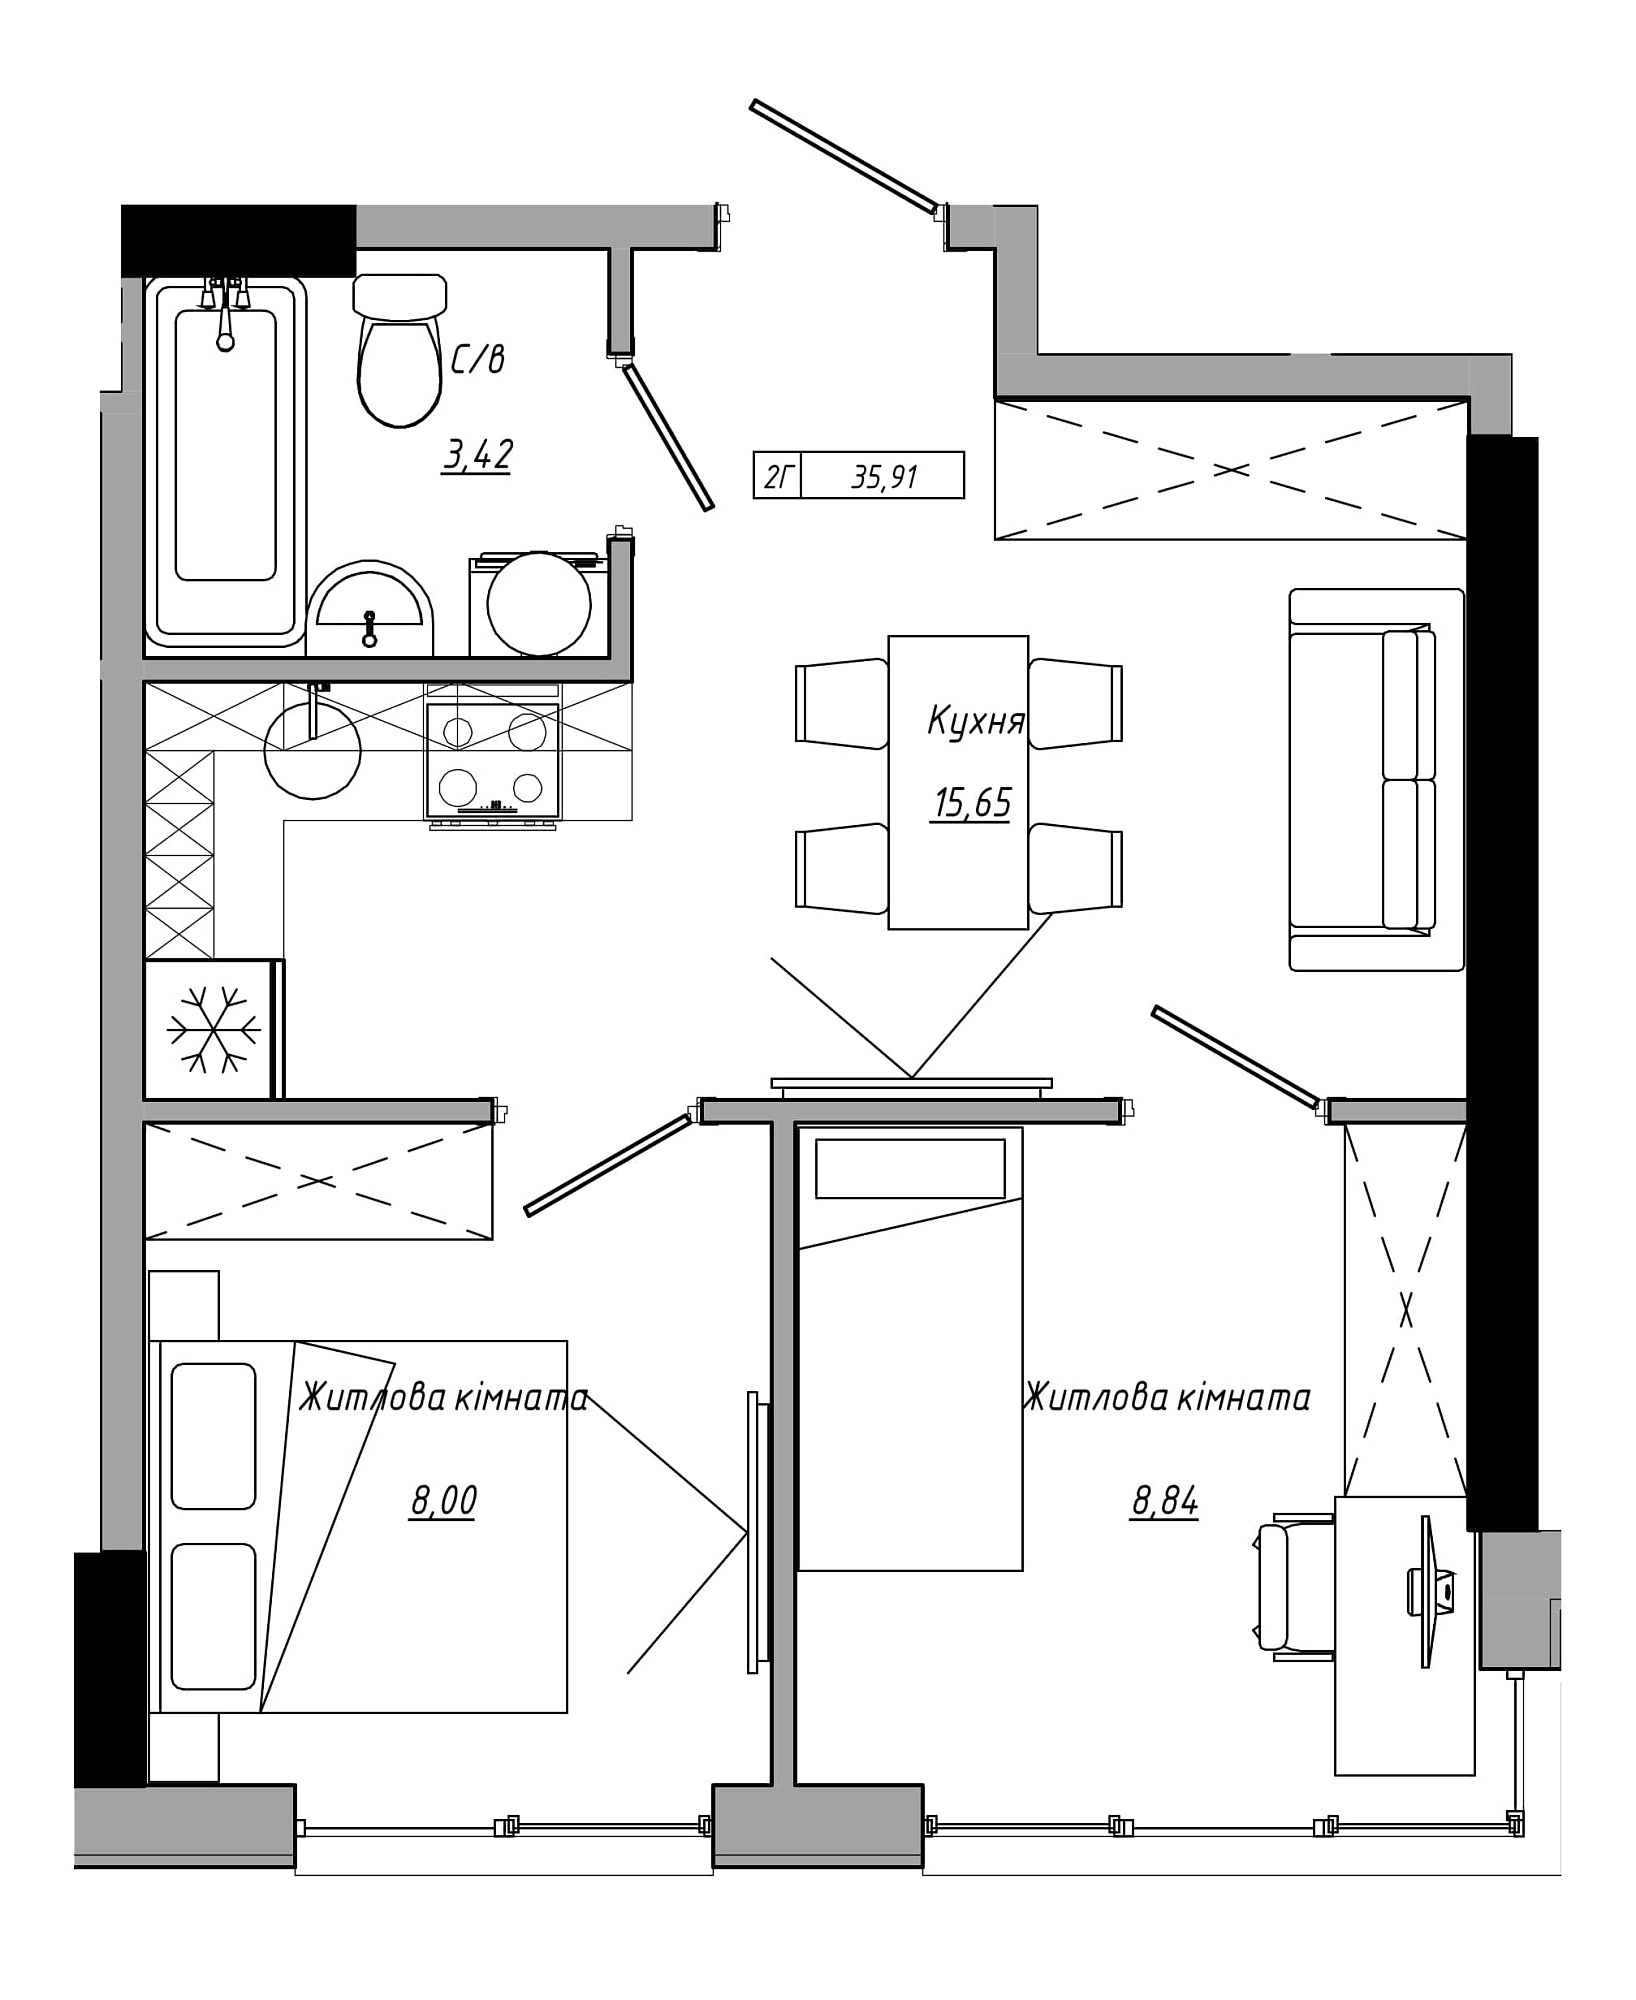 Планування 2-к квартира площею 35.91м2, AB-21-07/00019.